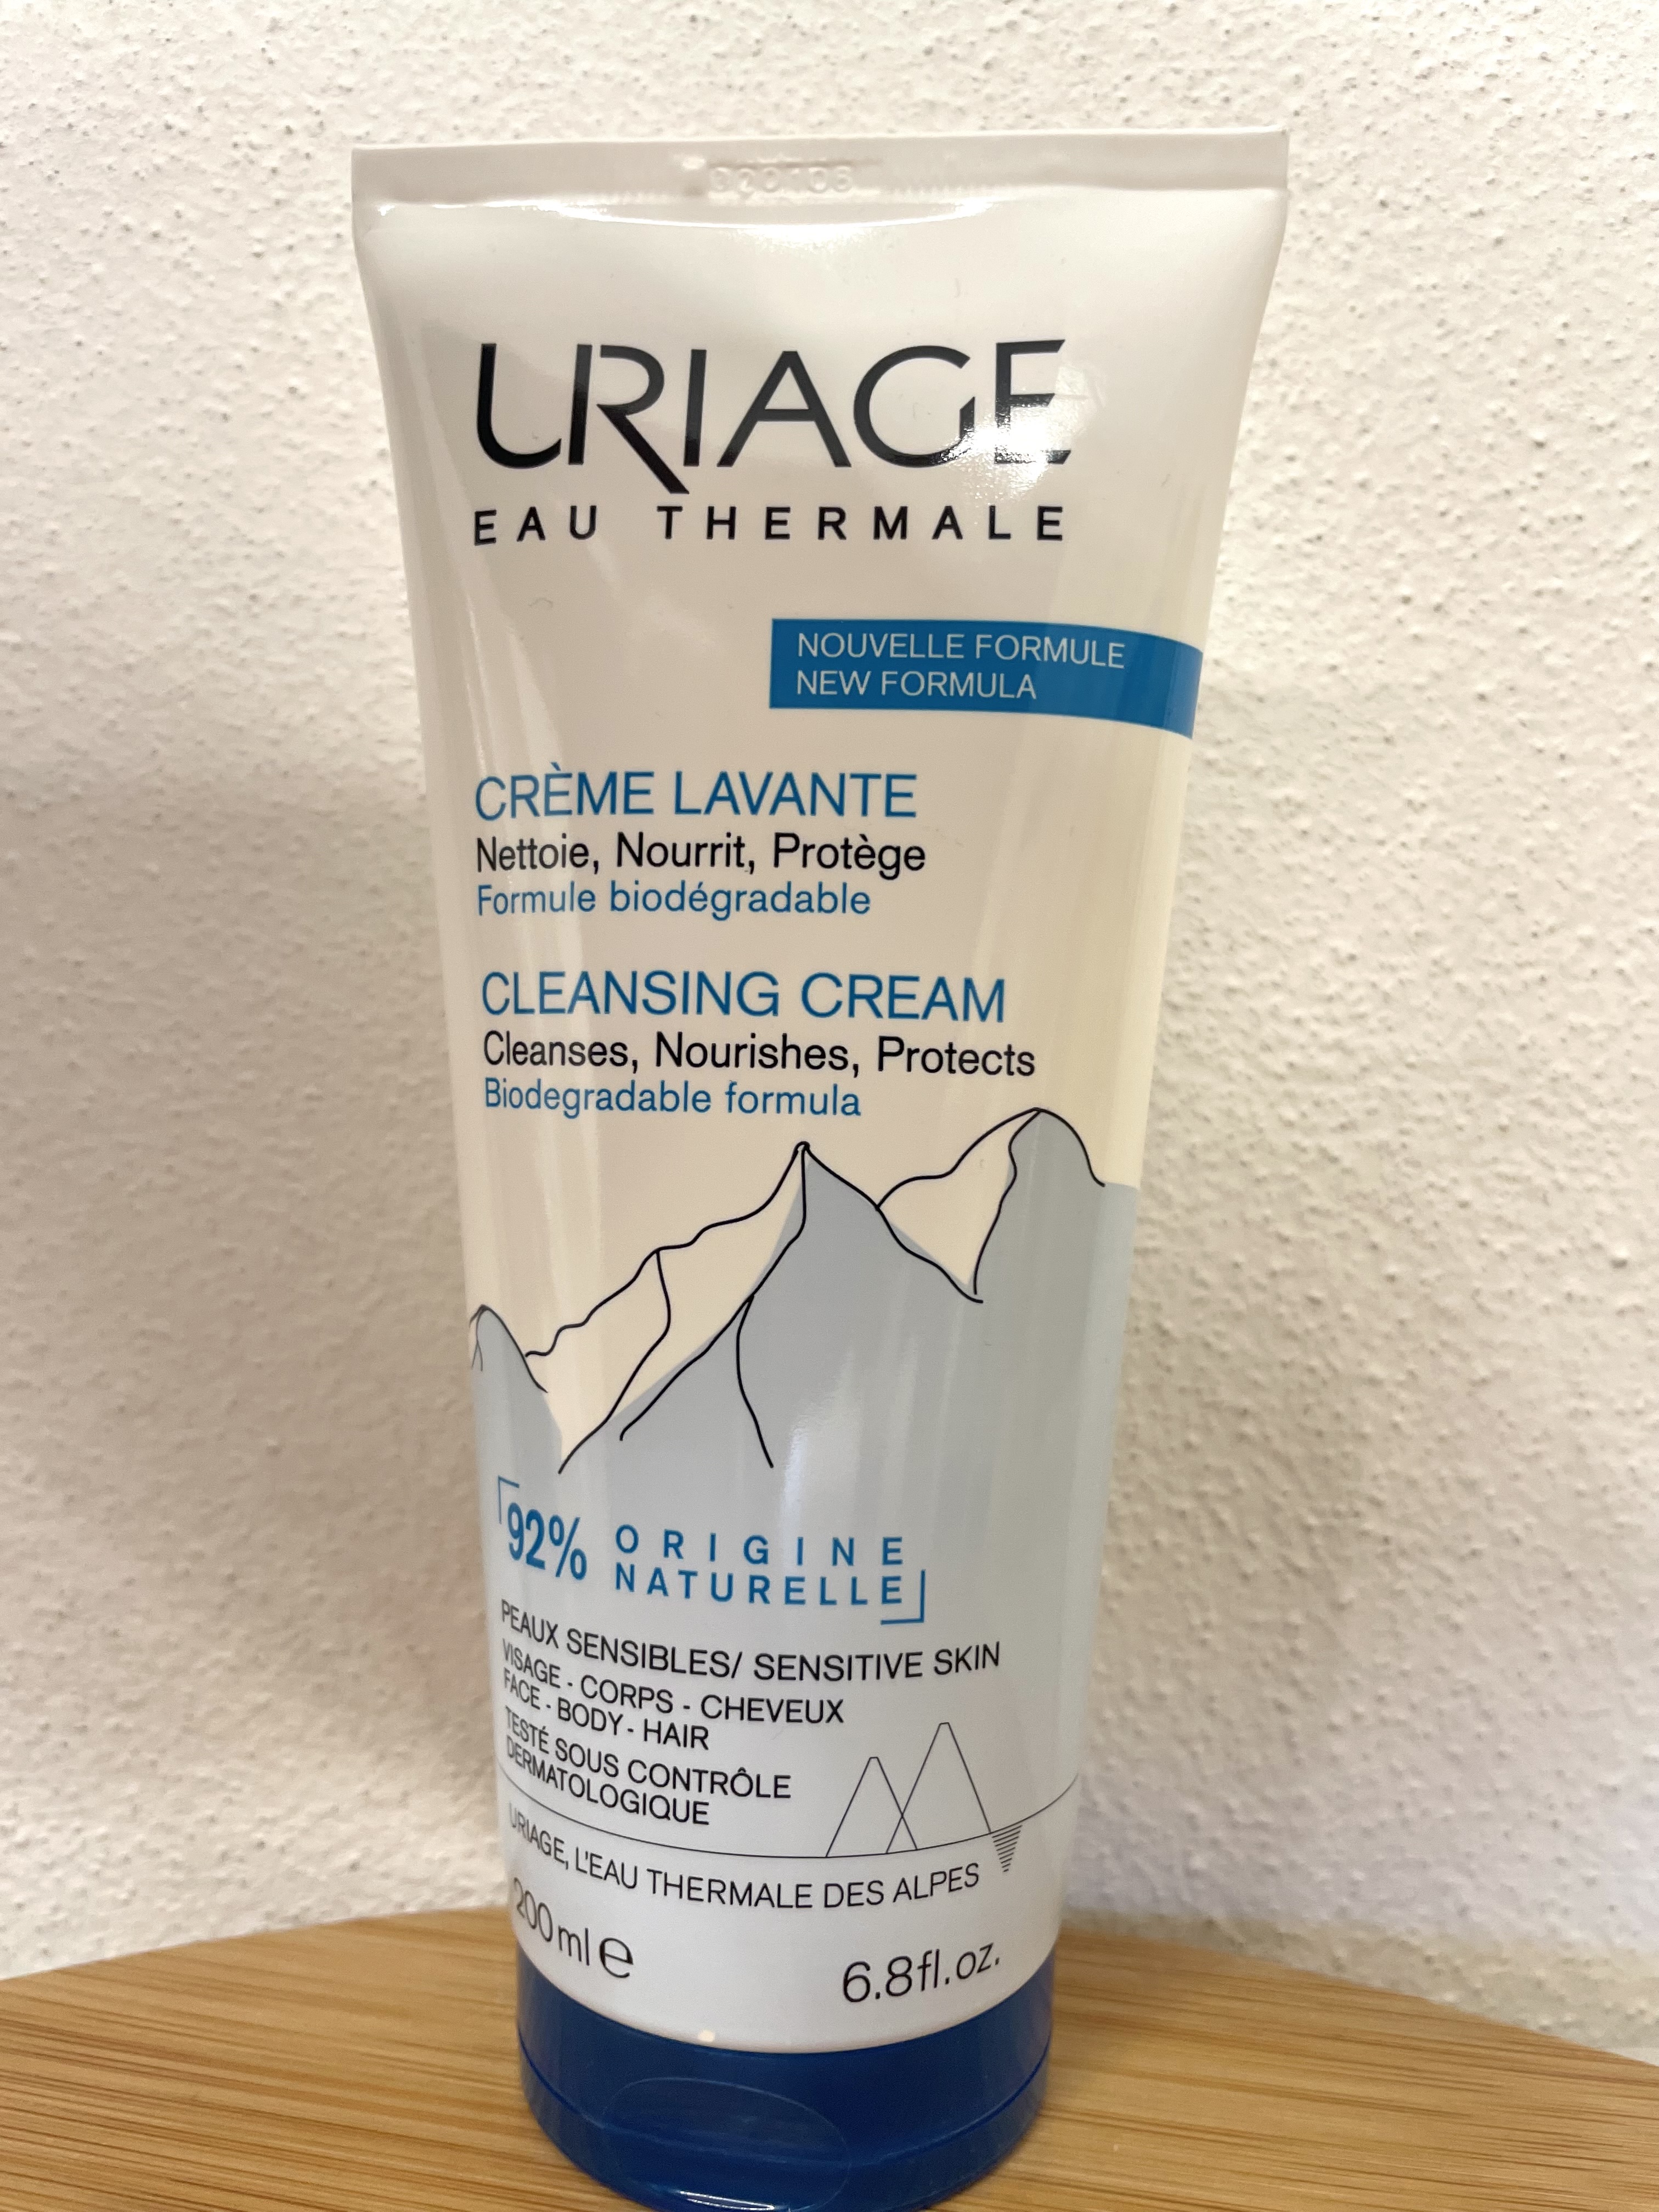 Uriage: Cleansing Cream